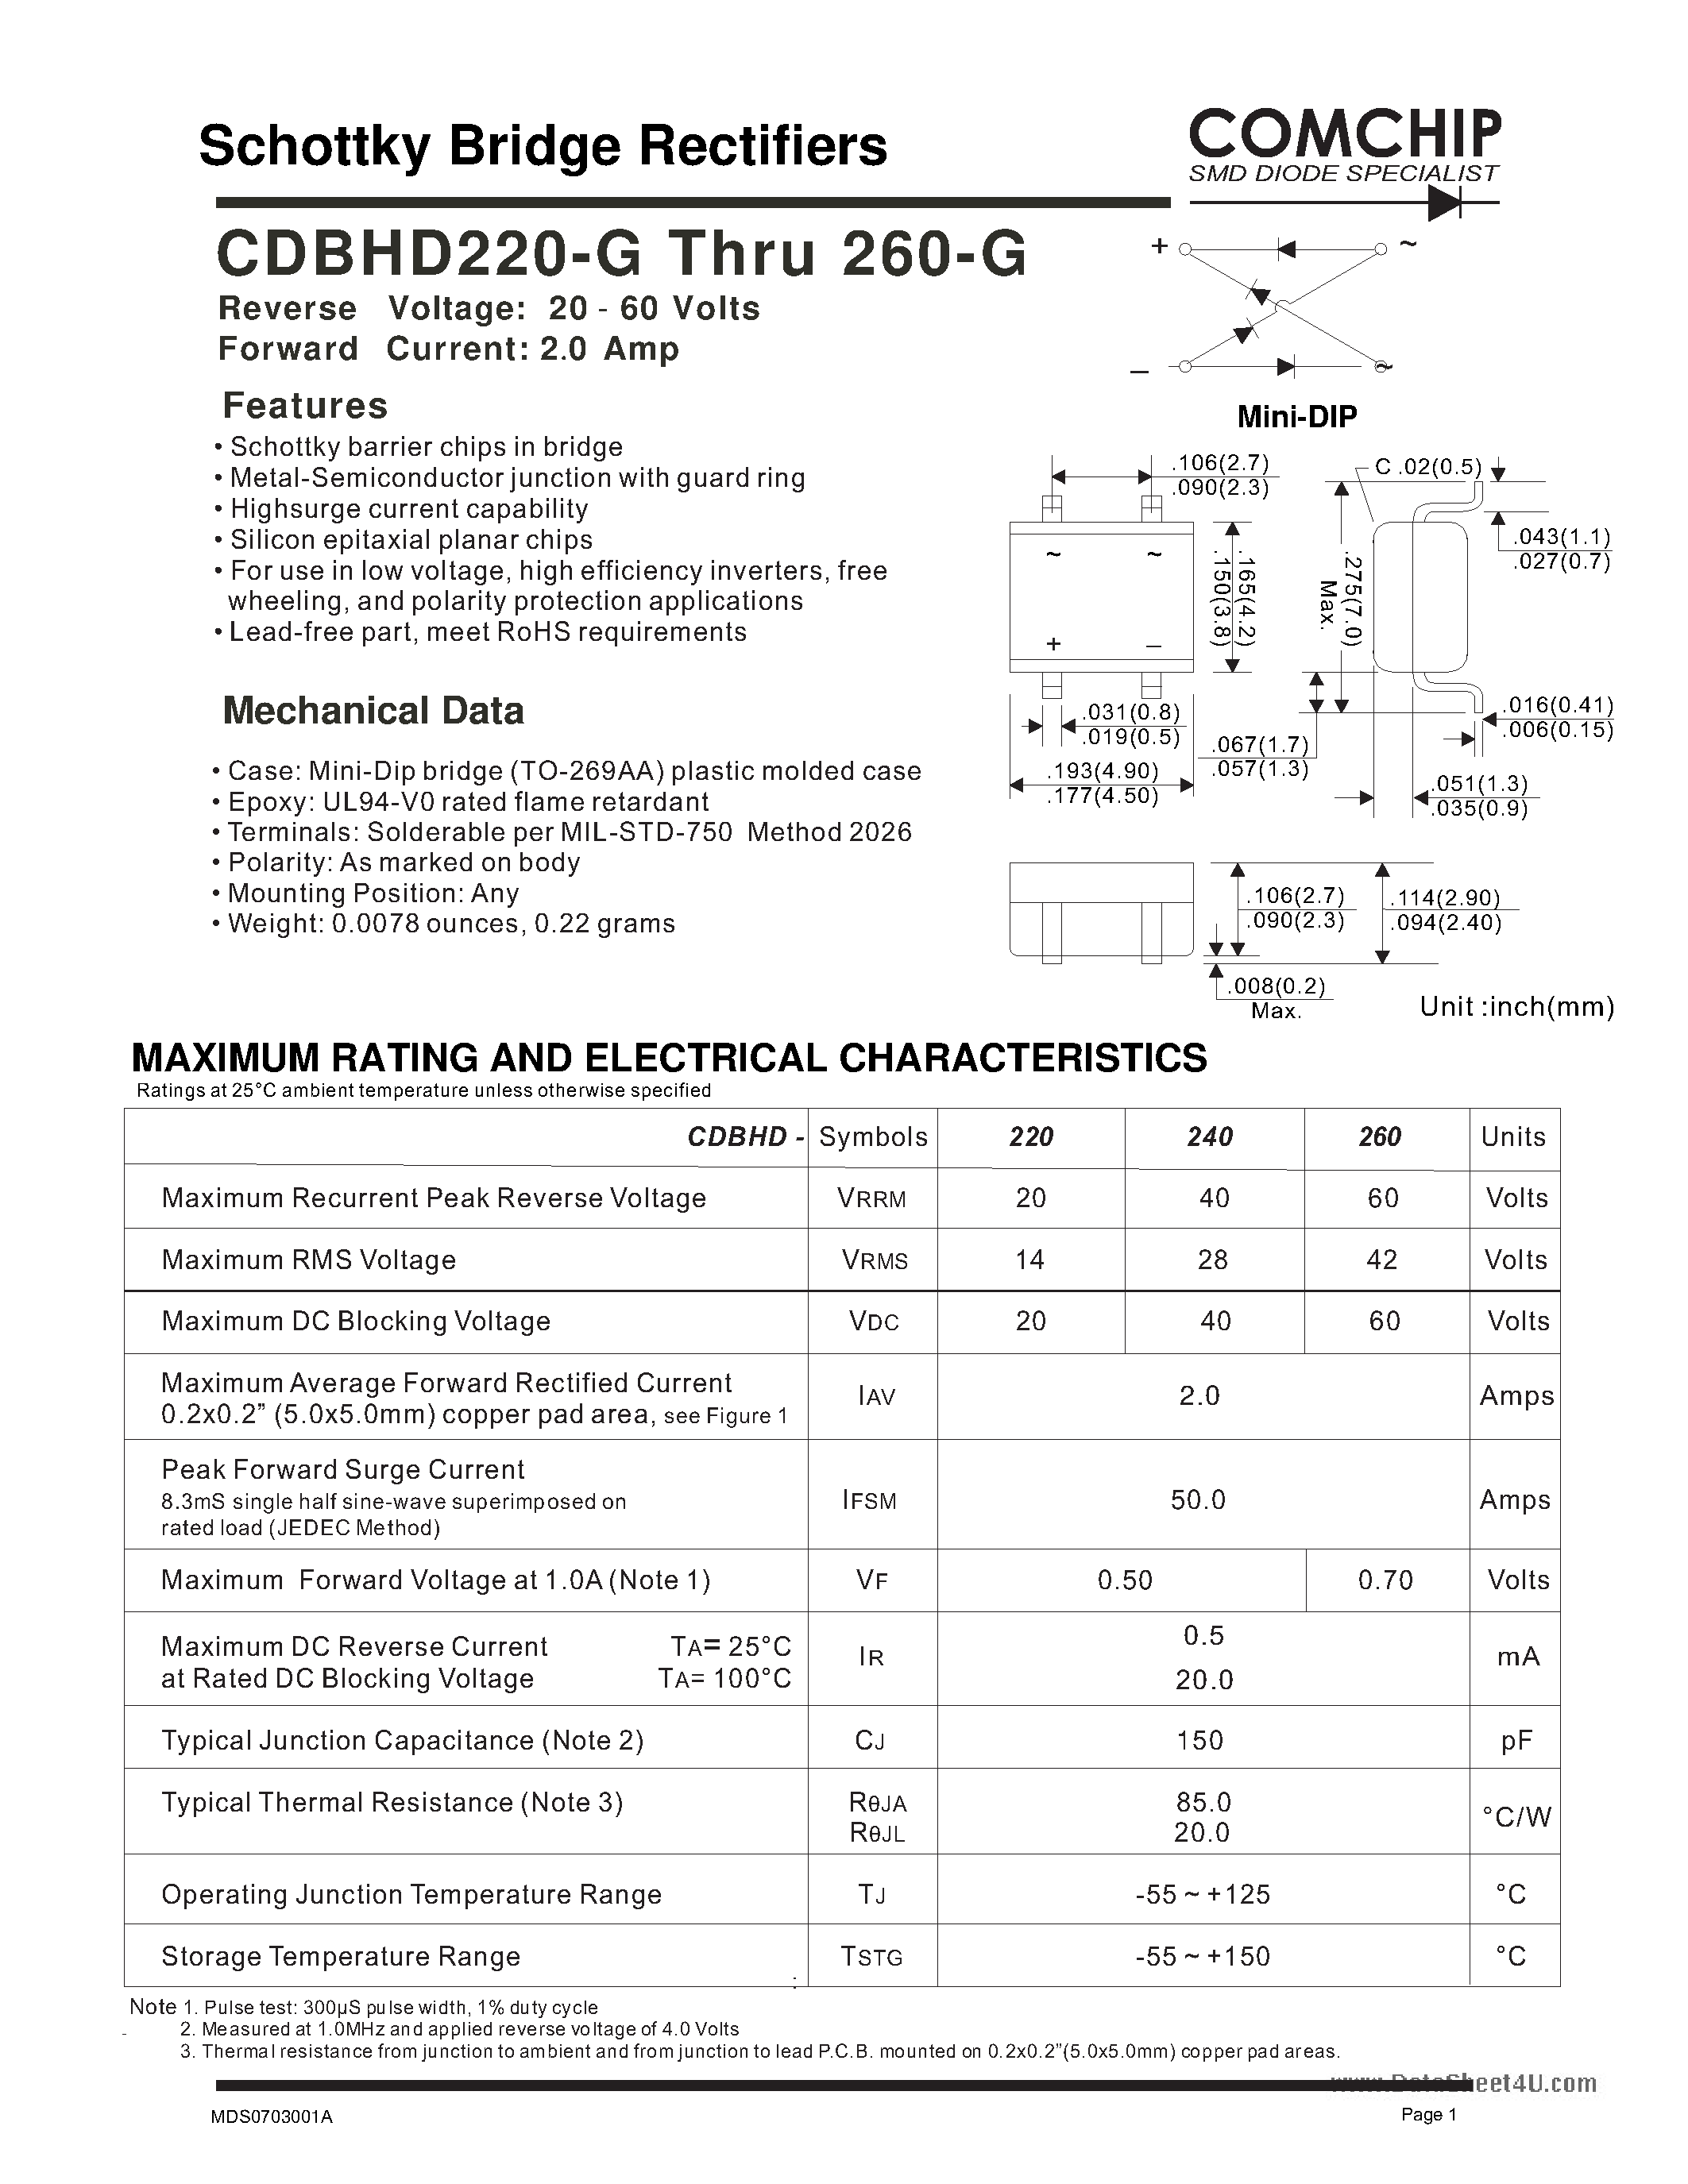 Datasheet CDBHD220-G - (CDBHD220-G - CDBHD260-G) Schottky Bridge Rectifiers page 1